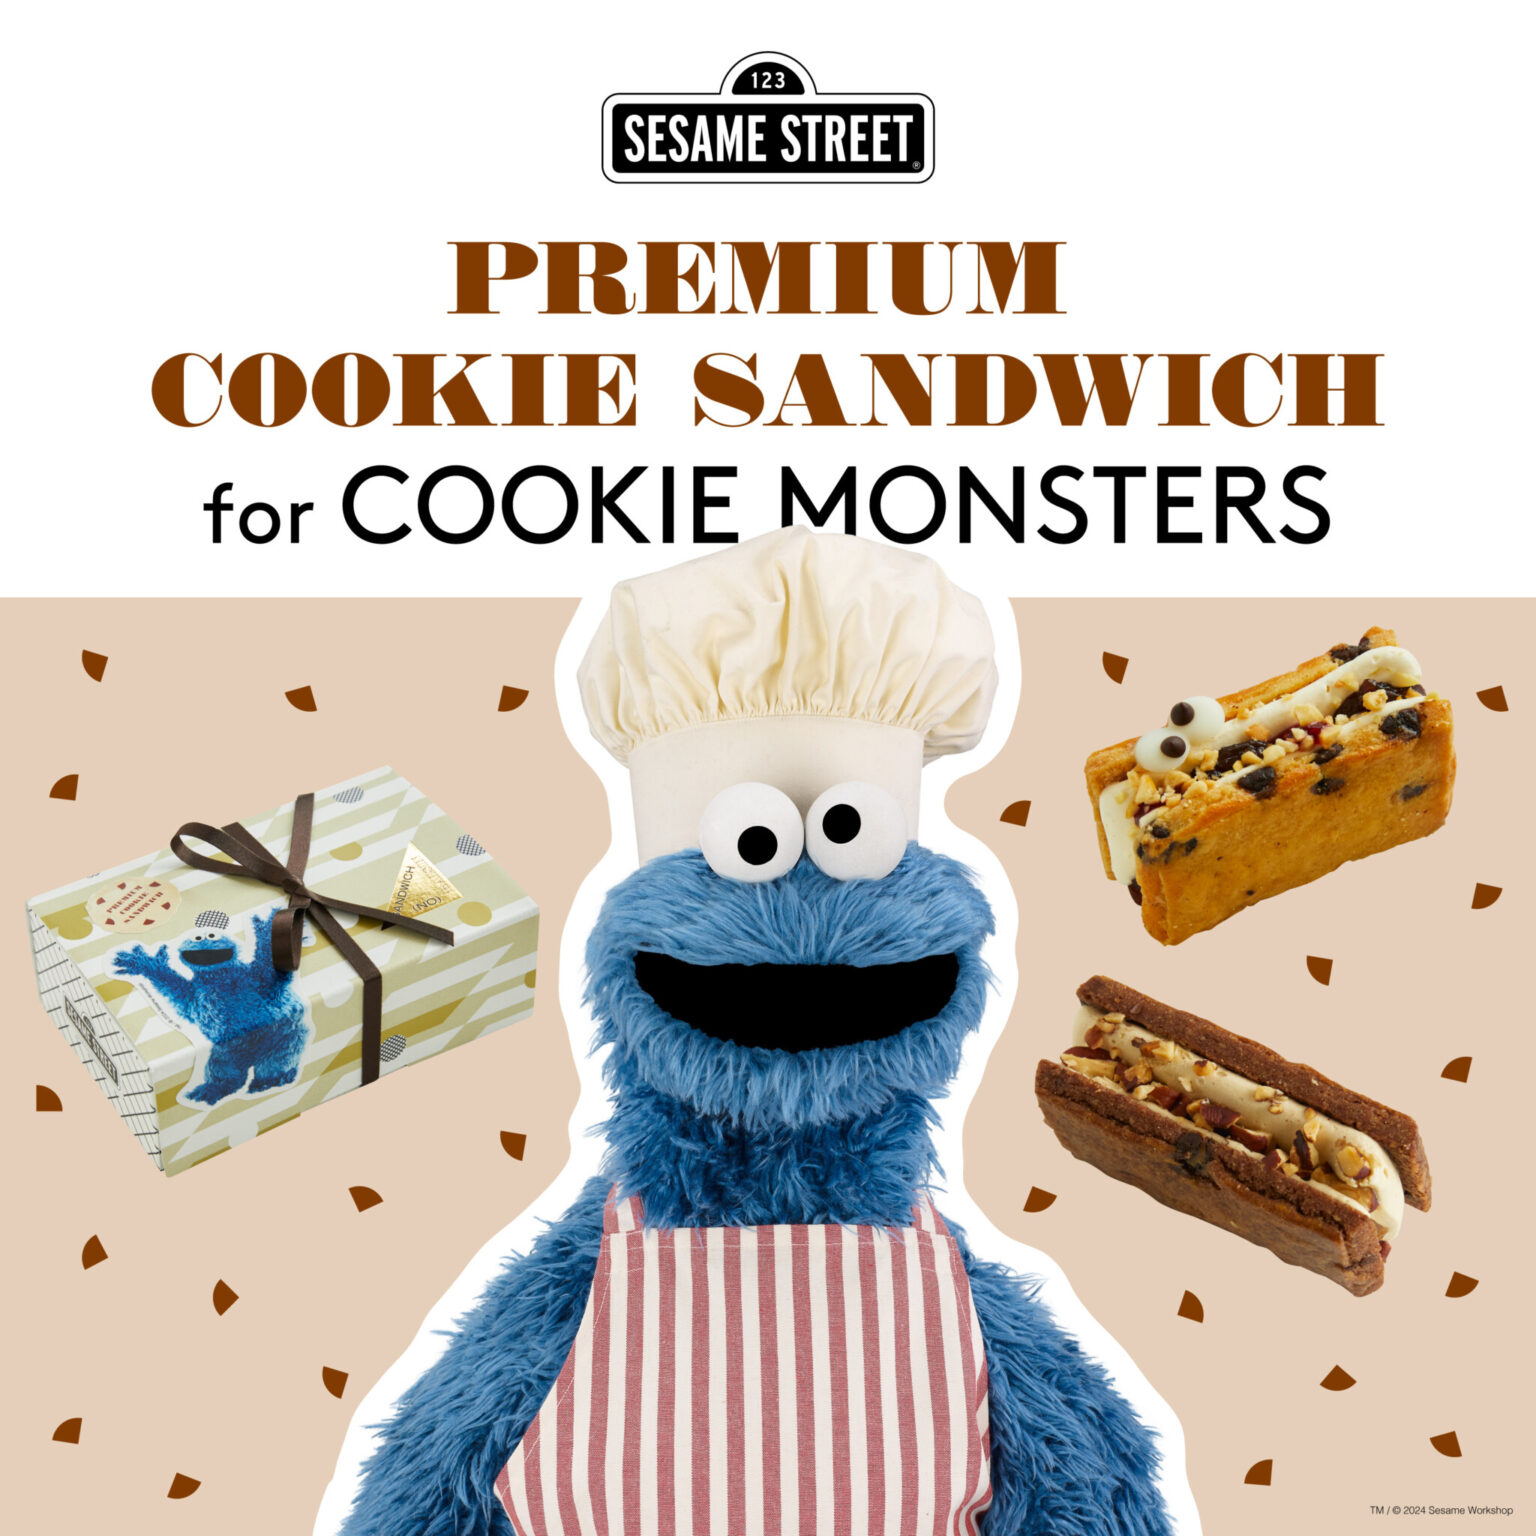 2024年4月14日からは、セサミストリートとのコラボレーションで、クッキーモンスターのためのチョコチップクッキーサンド「プレミアムクッキーサンドイッチ for クッキーモンスターズ 」が発売。クッキーモンスターの大ファンである平野さん念願の企画。